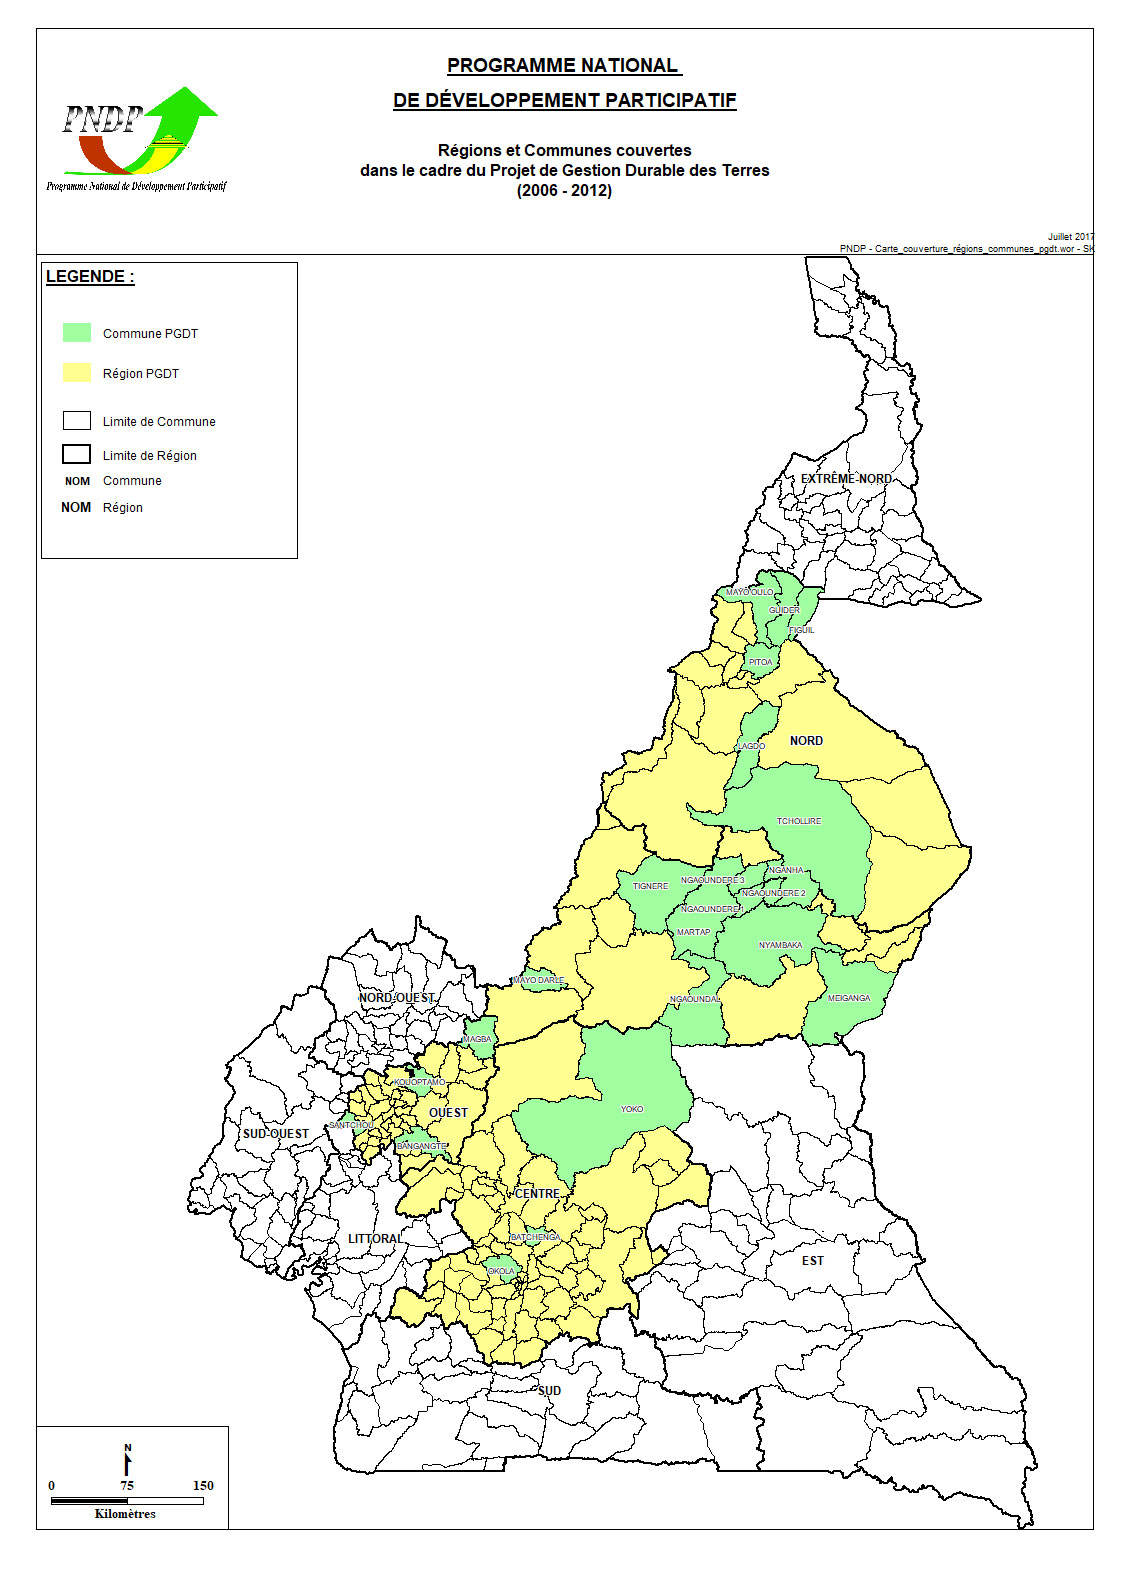 Régions et Communes couvertes dans le cadre du Projet de Gestion Durable des Terres (2006 - 2012)